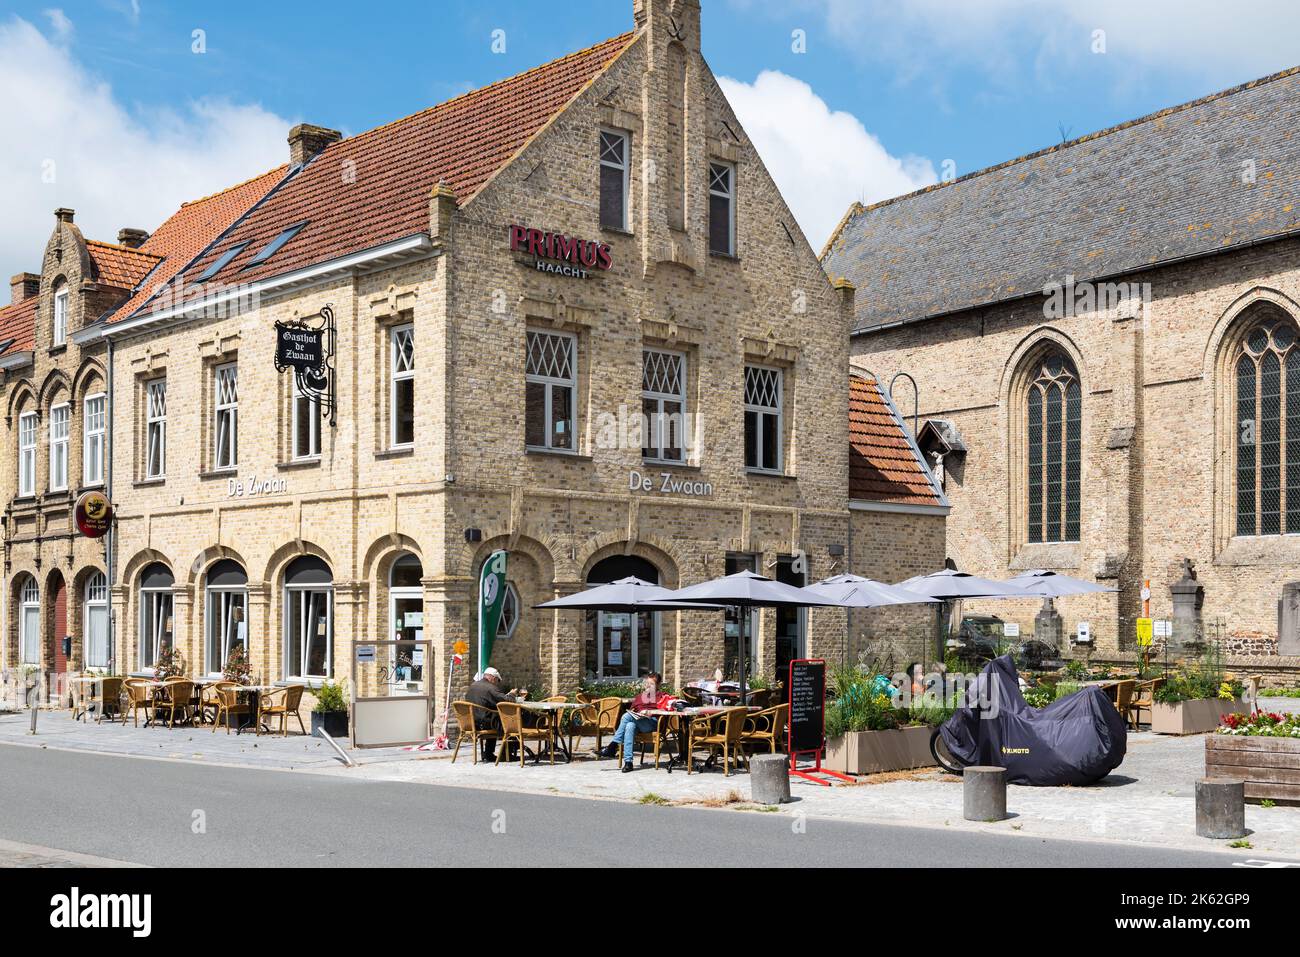 Lo-rening, Fiandre Occidentali Regione - Belgio - 07 17 2021 terrazze soleggiate nella piazza principale del mercato nel centro storico Foto Stock